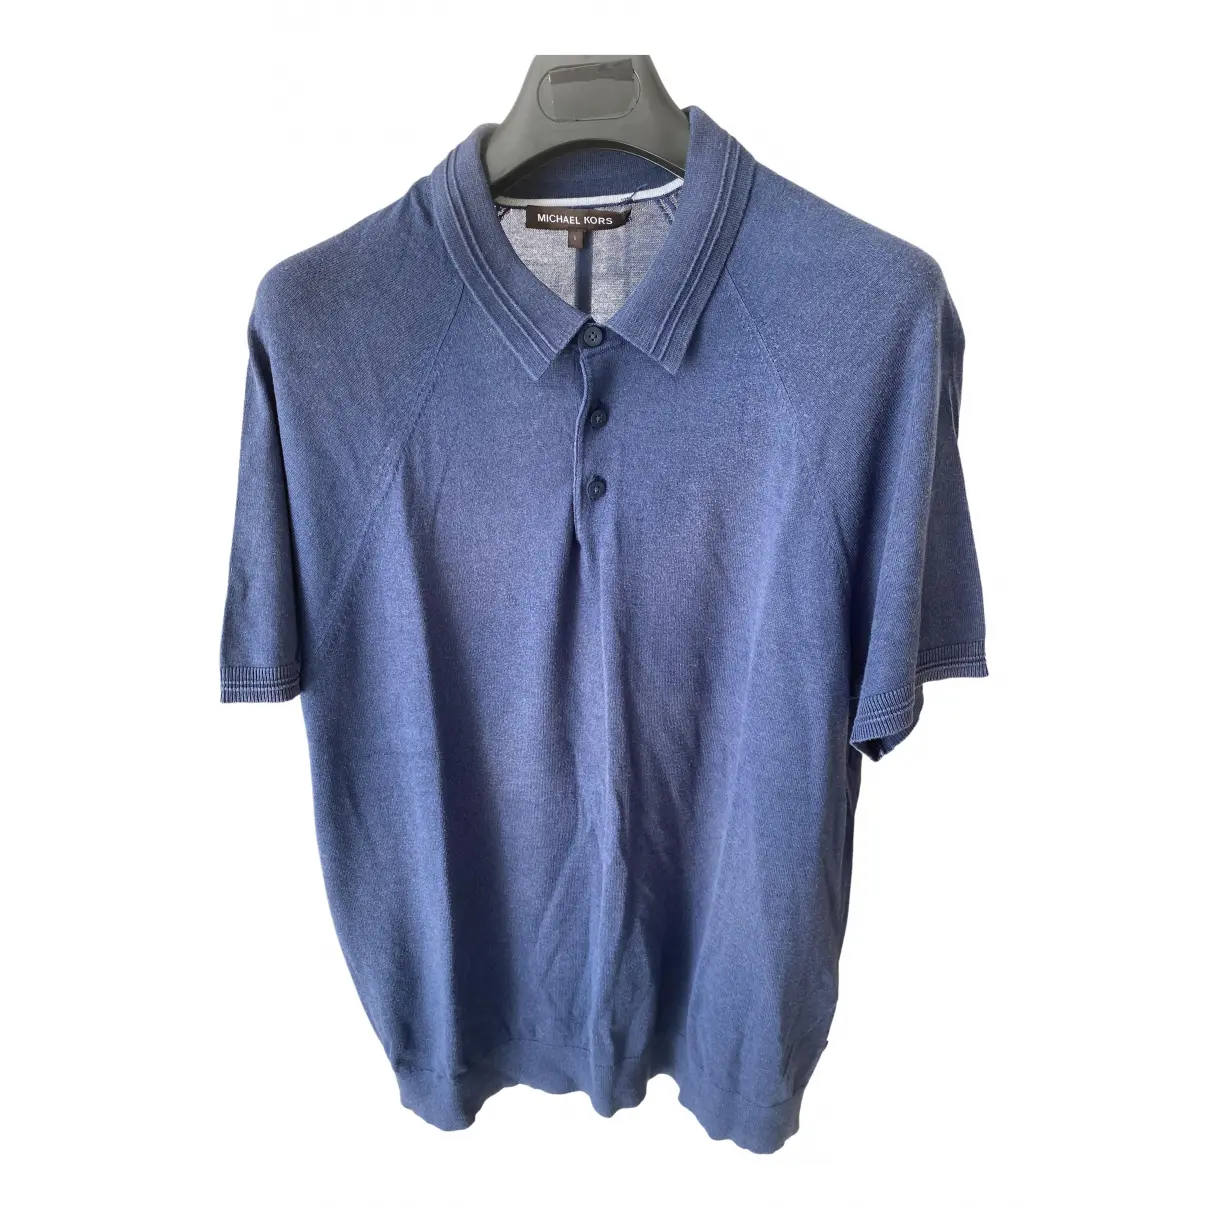 Polo shirt Michael Kors